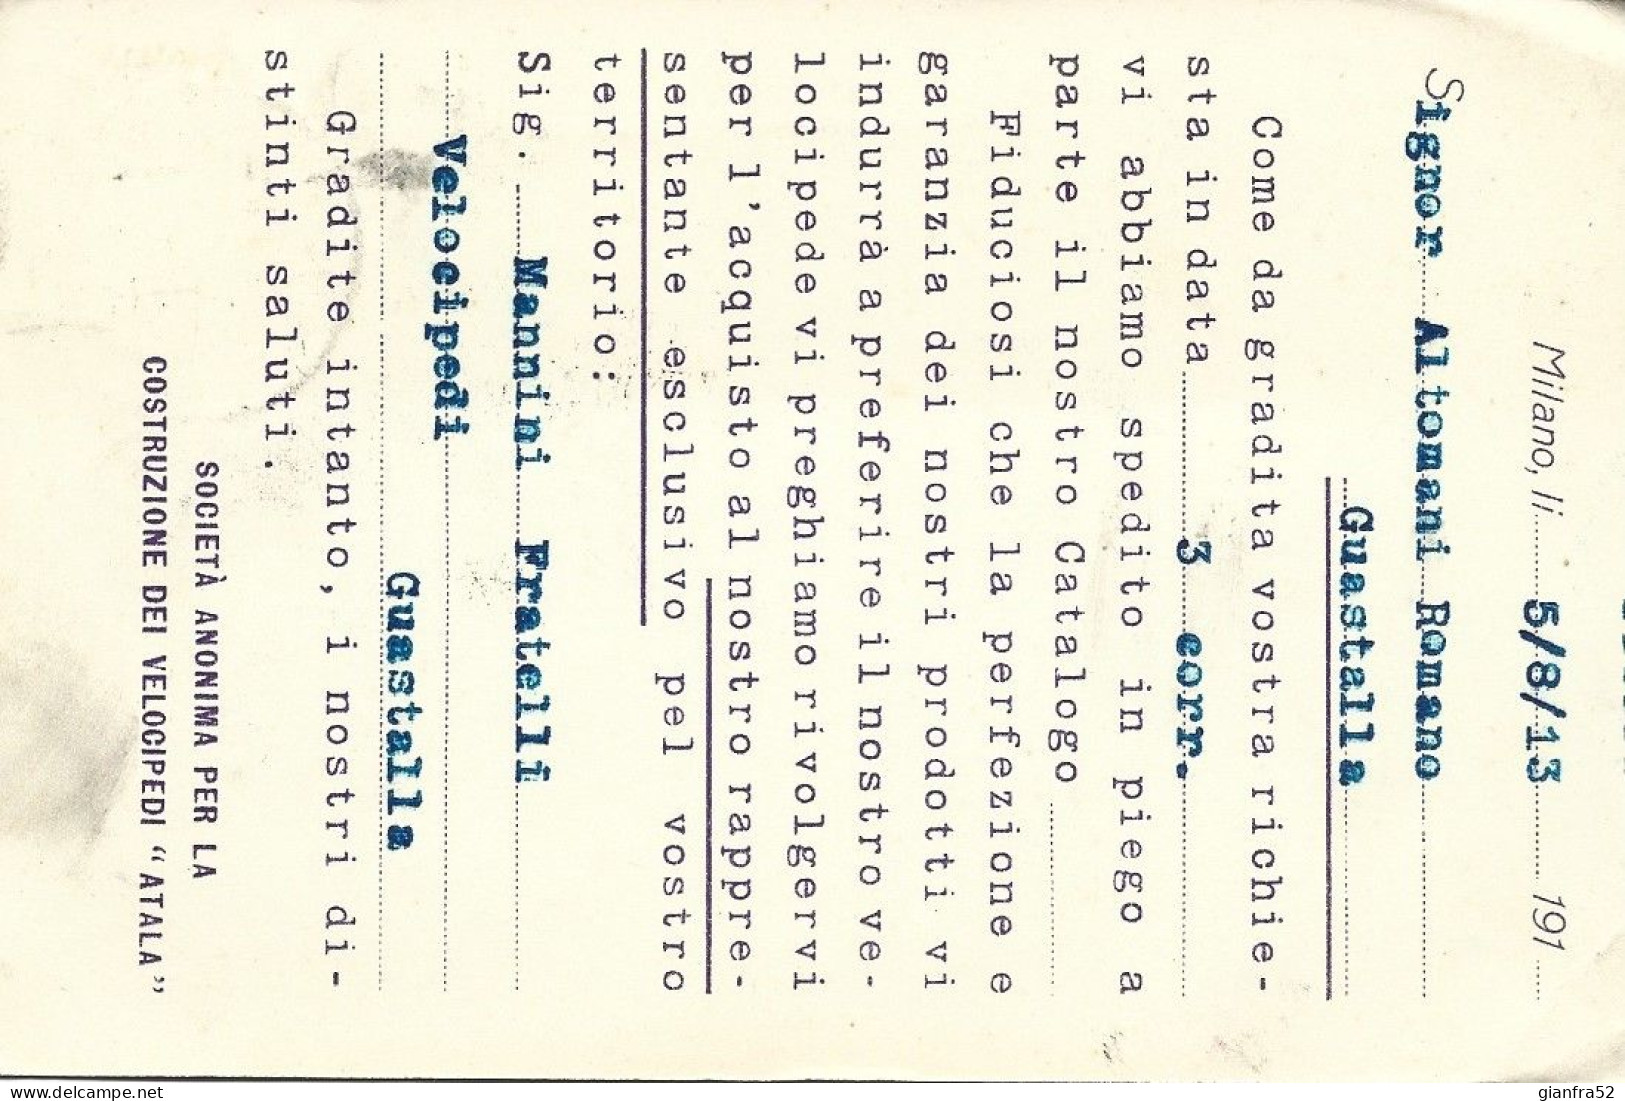 STORIA POSTALE 11/8/1913 CARTOLINA COMMERCIALE ATALA CON CENT. 10 LEONI N. 82 - Publicité